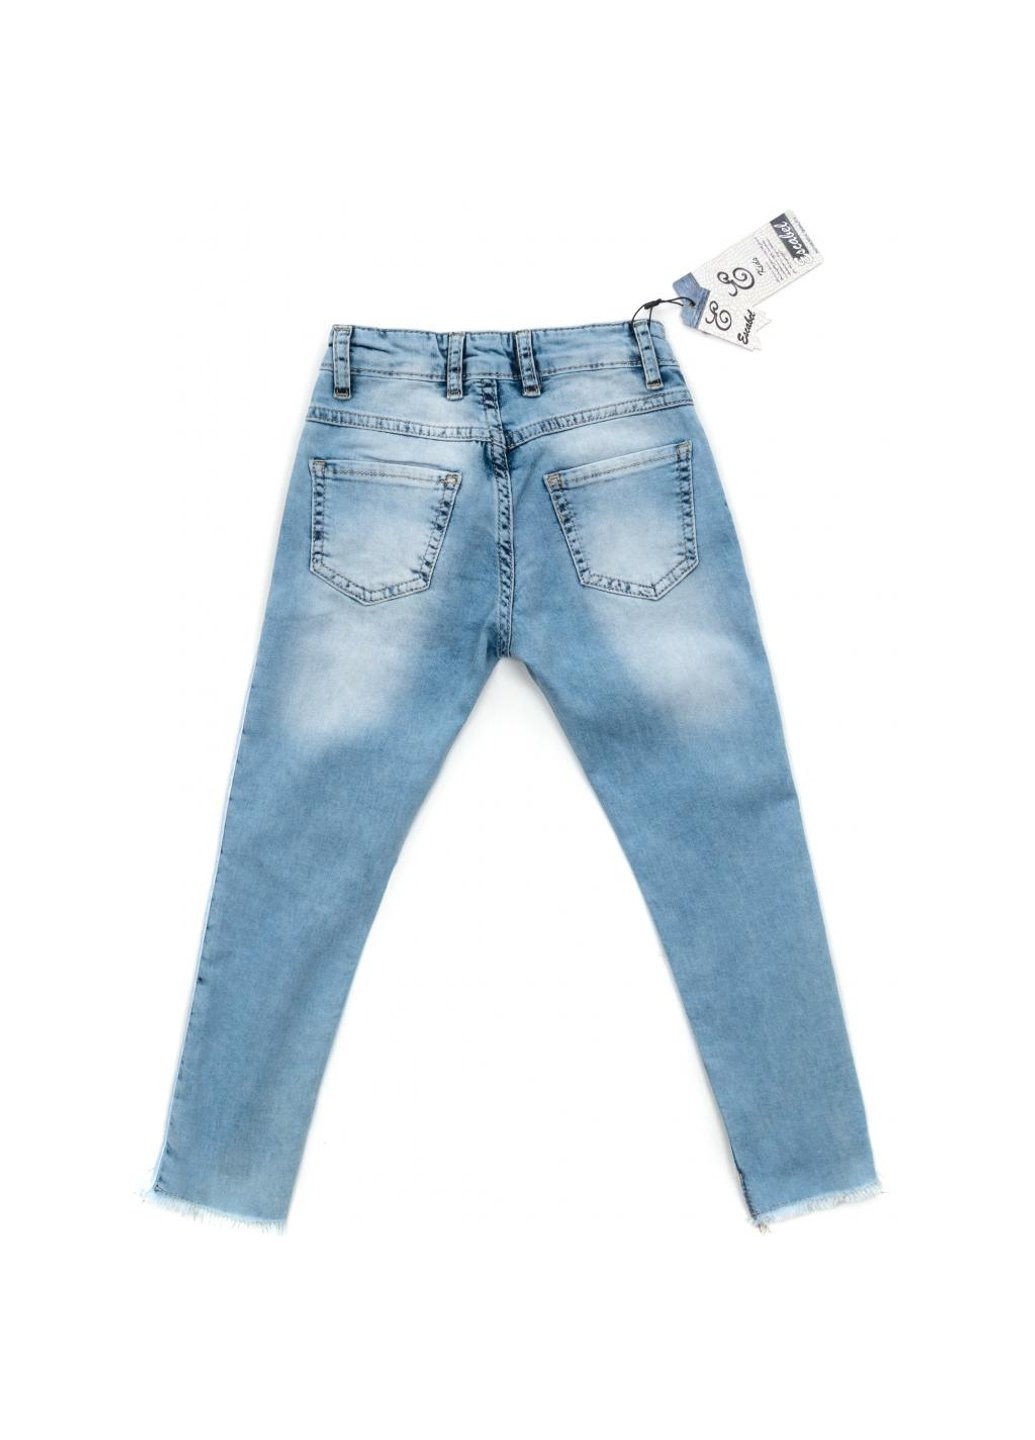 Голубые демисезонные джинсы зауженые (esc-1981-2-176g-blue) Breeze